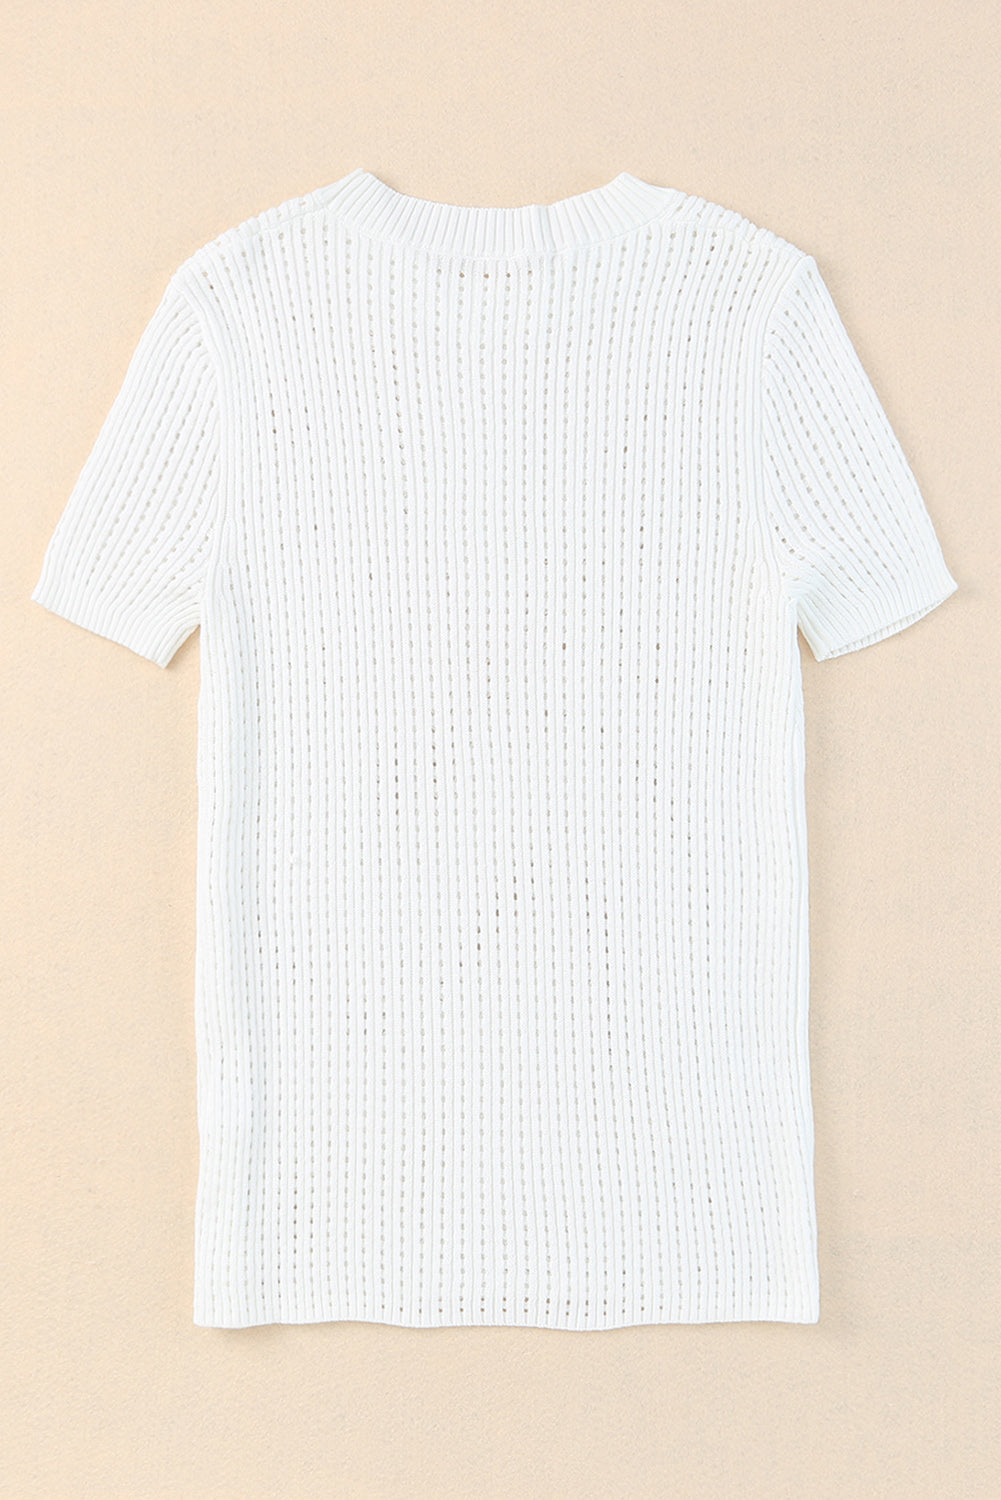 Bijela izdubljena pletena majica kratkih rukava